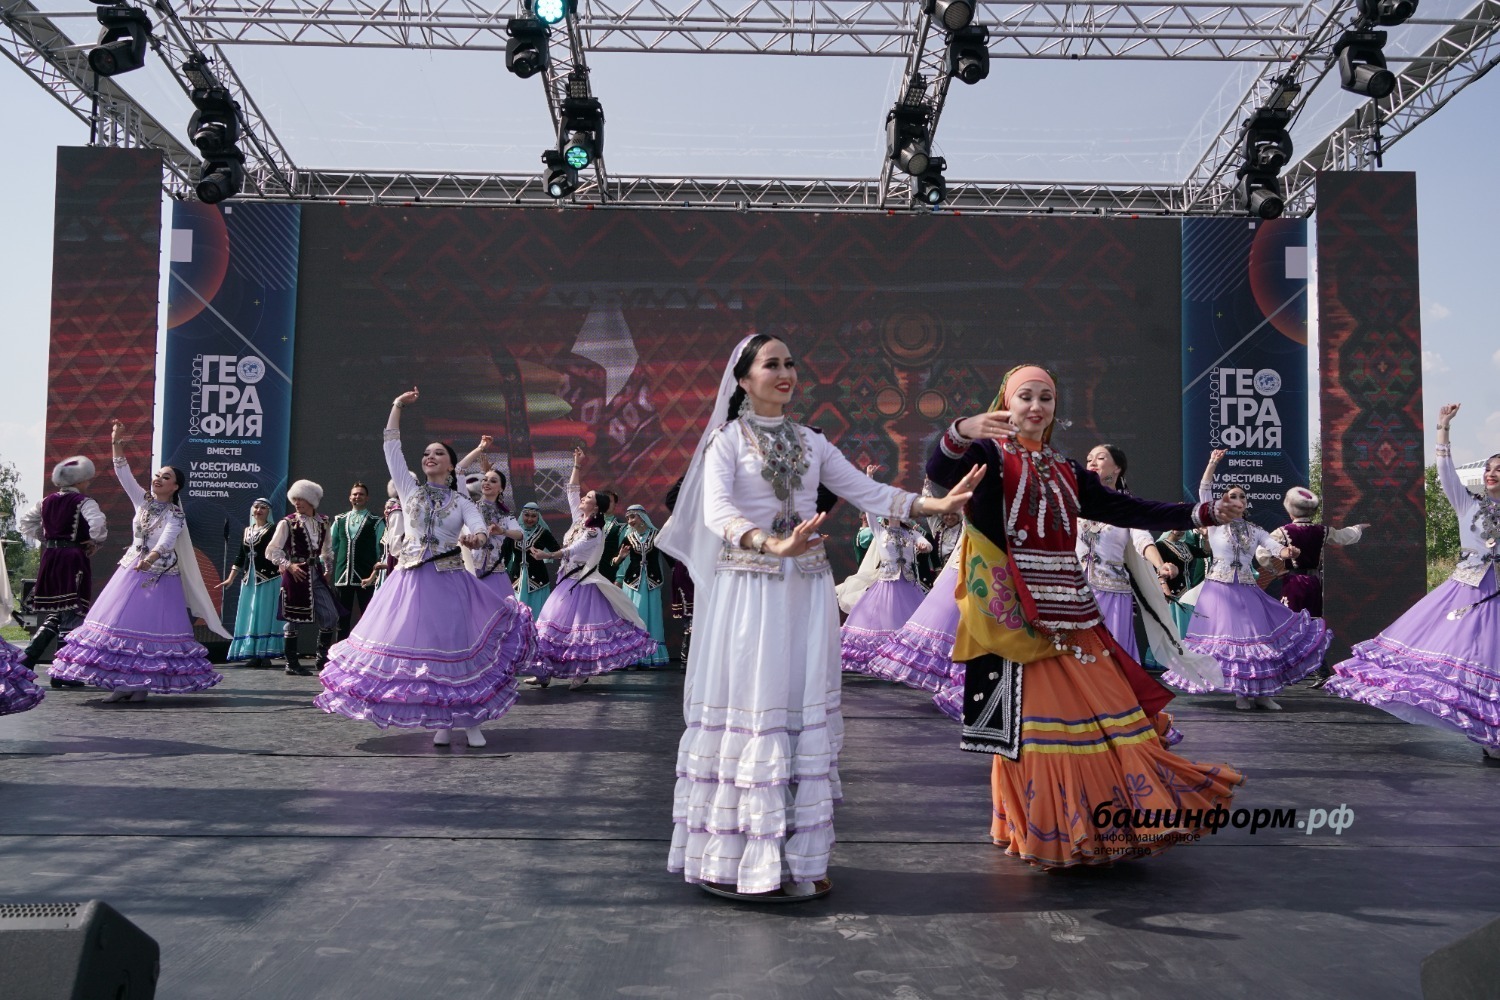 Мастера искусств Башкортостана показали в Москве праздничную программу под открытым небом